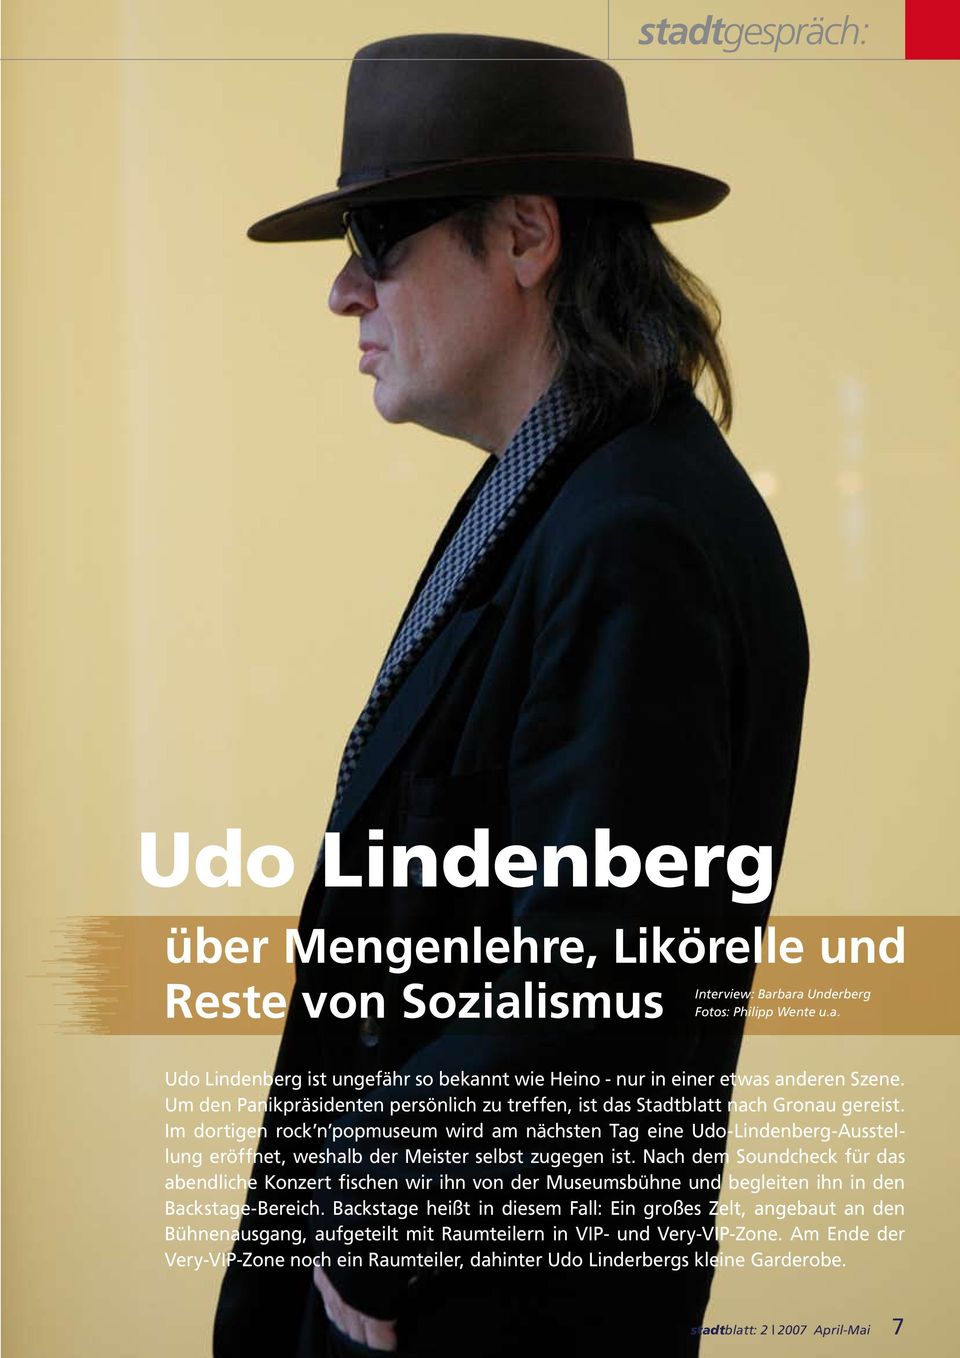 Im dortigen rock n popmuseum wird am nächsten Tag eine Udo-Lindenberg-Ausstellung eröffnet, weshalb der Meister selbst zugegen ist.